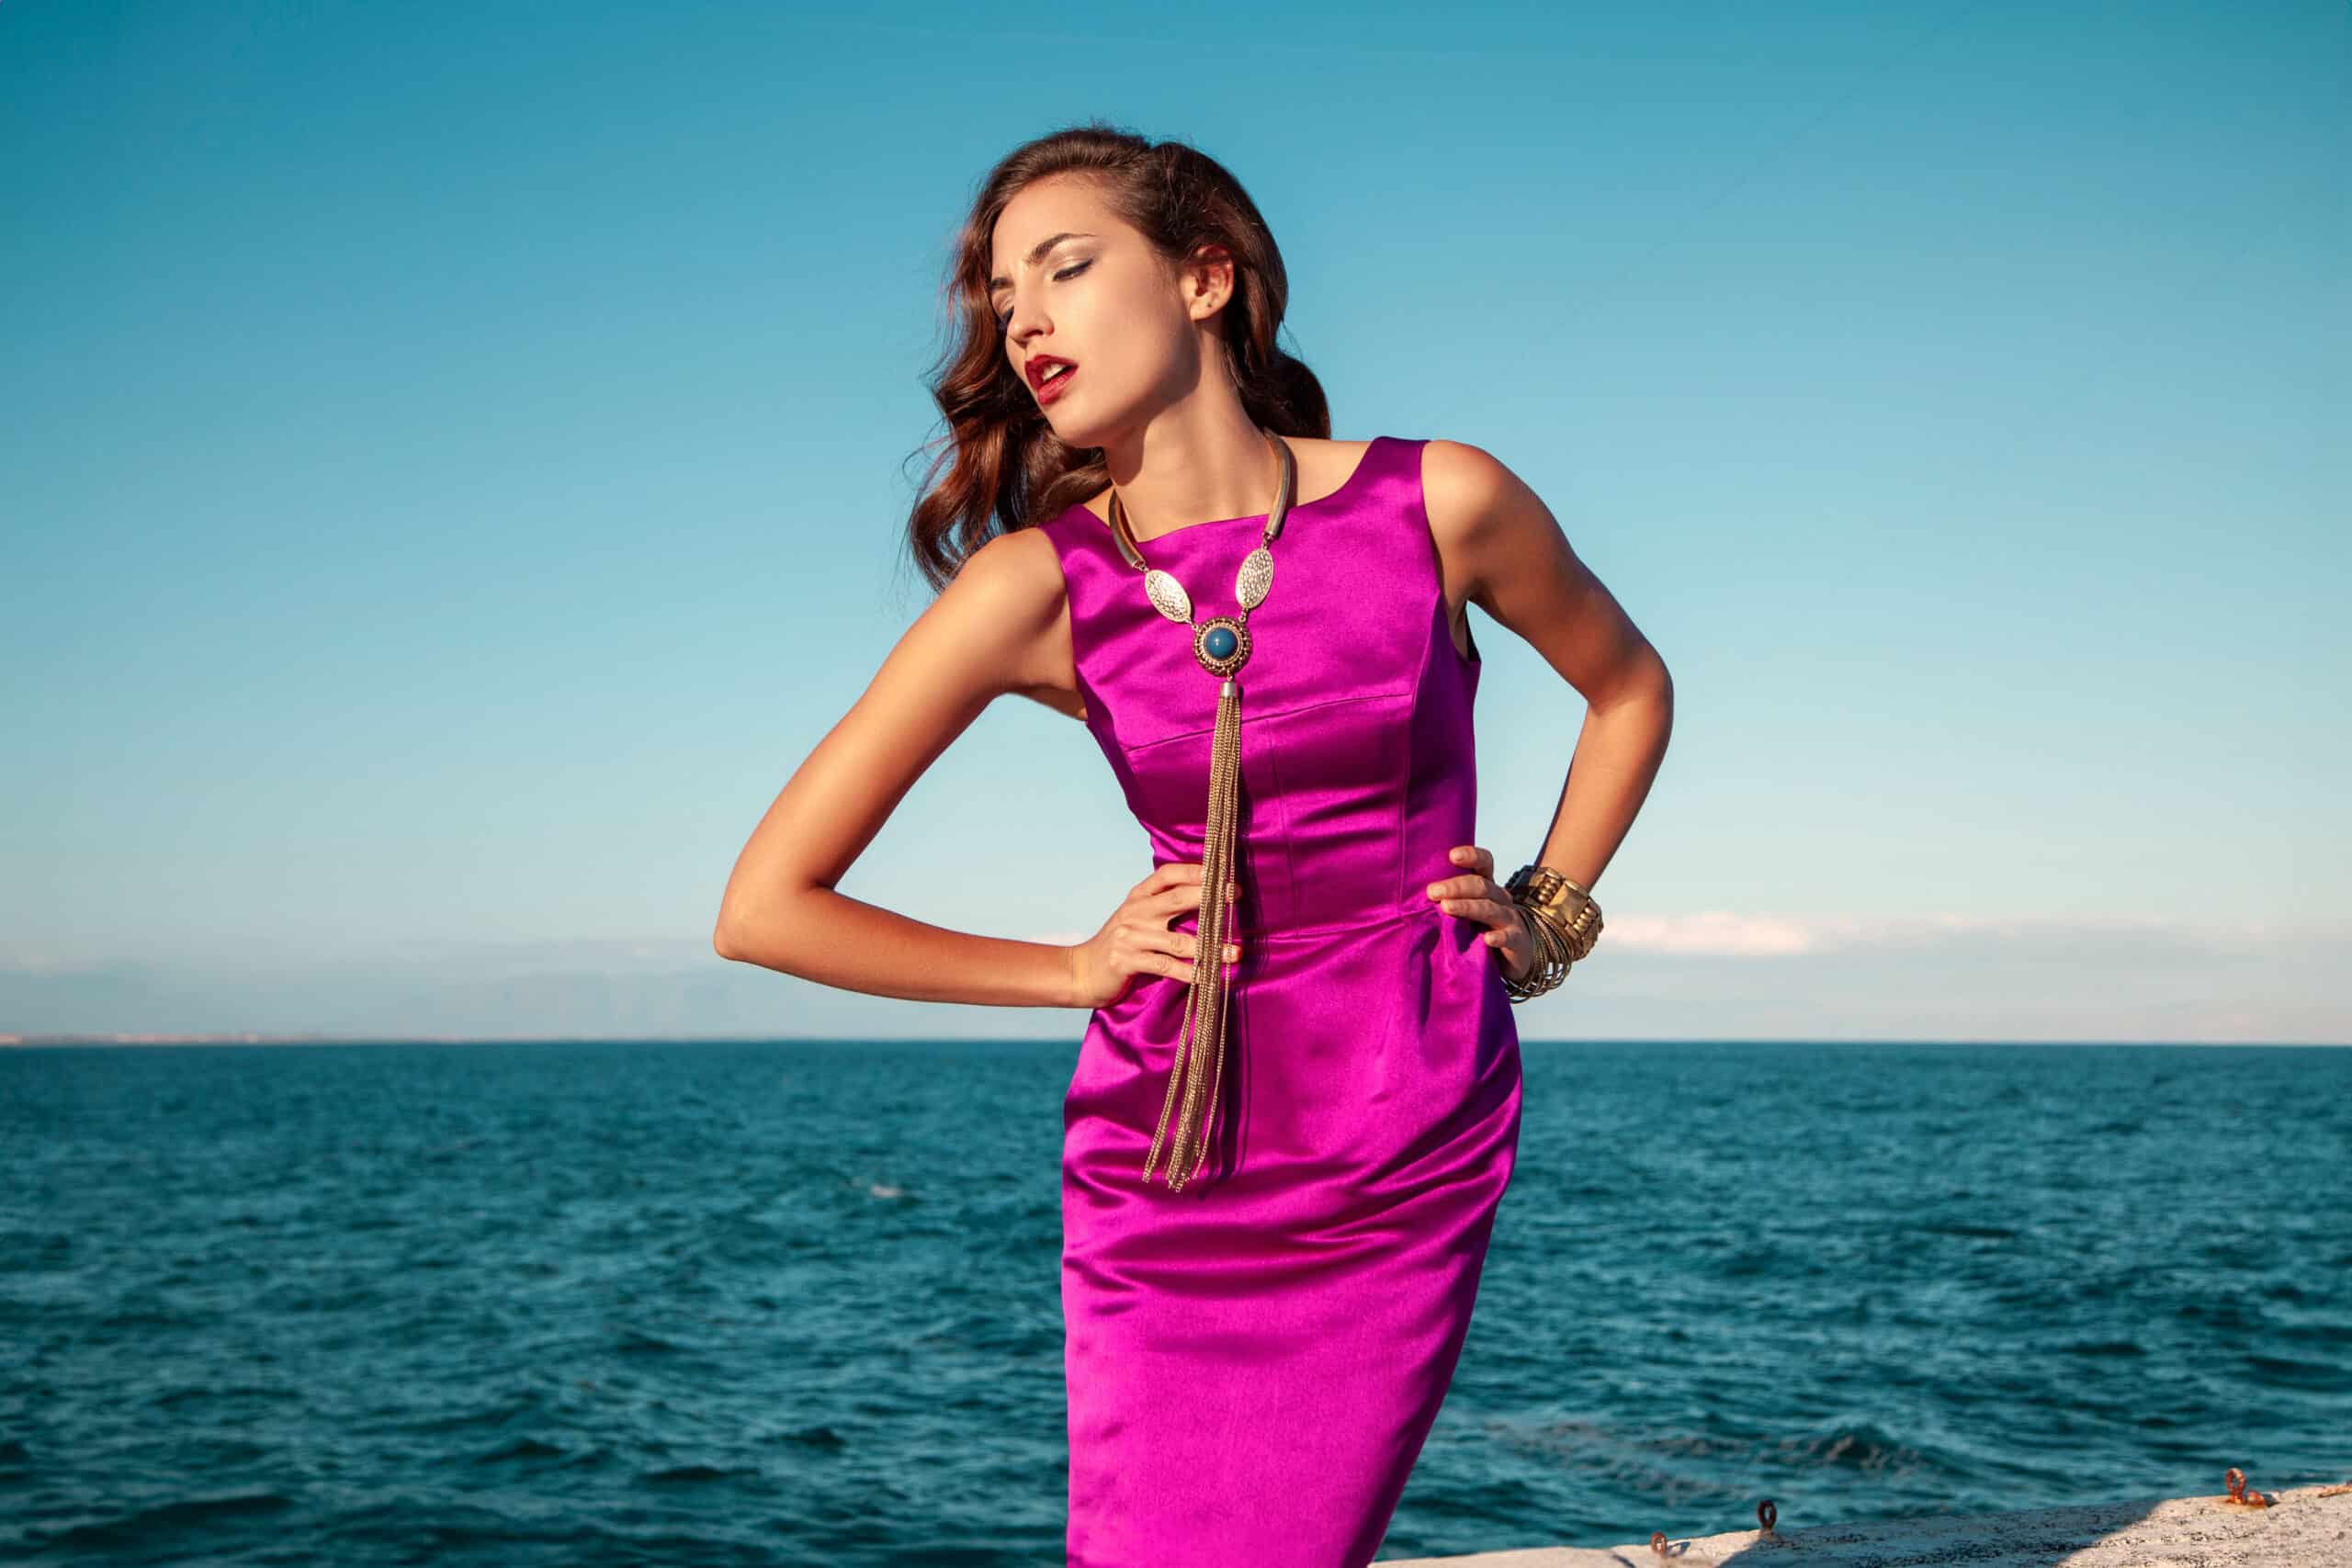 Eine Frau in einem leuchtend rosa Kleid steht elegant am Meer, mit einem klaren blauen Himmel im Hintergrund, ihr Haar ist zur Seite frisiert. Sie posiert selbstbewusst, die Hand auf der Hüfte. © Fotografie Tomas Rodriguez